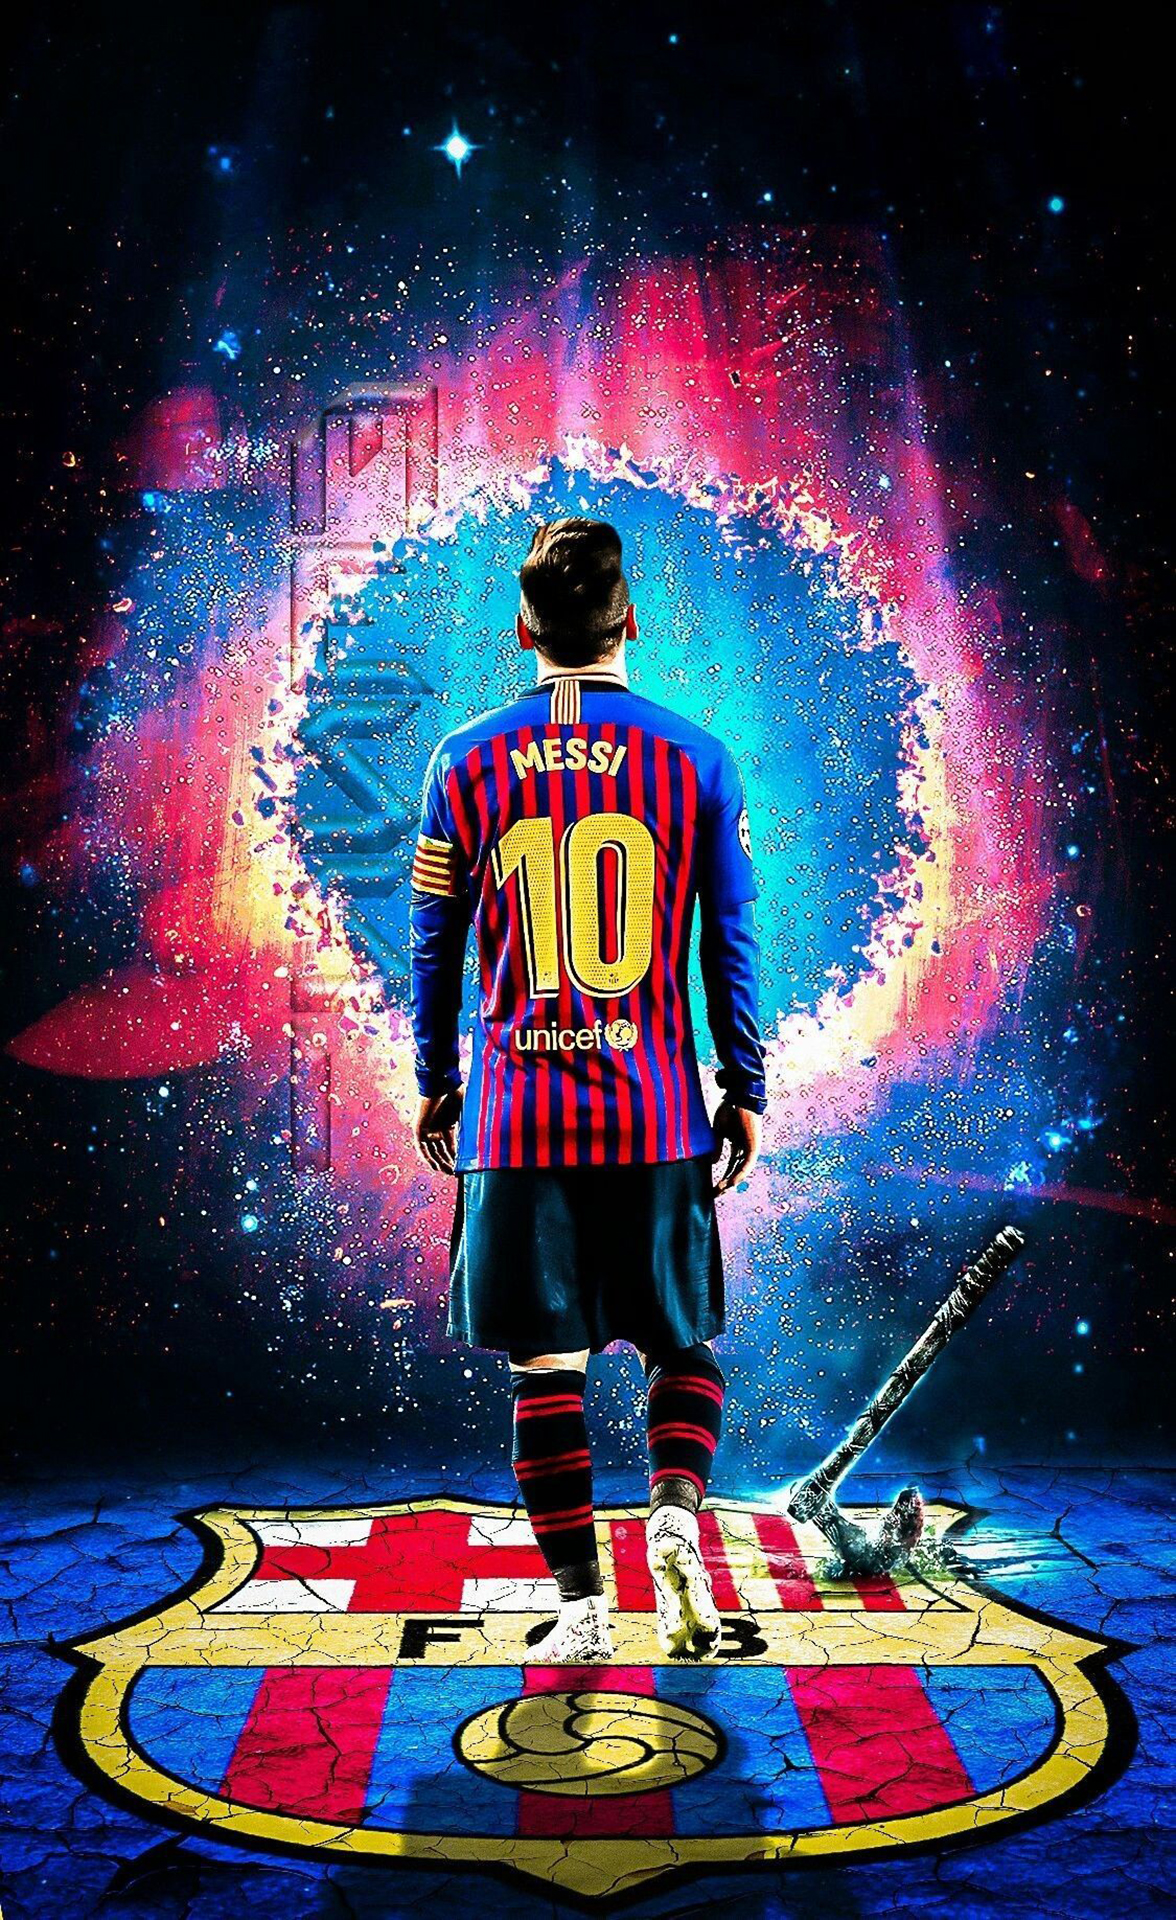 Hình nền Messi: Tham gia vào trò chuyện cùng Messi thông qua hình nền của anh. Với tông màu chủ đạo đầy tươi sáng, hình ảnh này sẽ mang đến cho bạn niềm tin vào thành công và hy vọng trong cuộc sống.